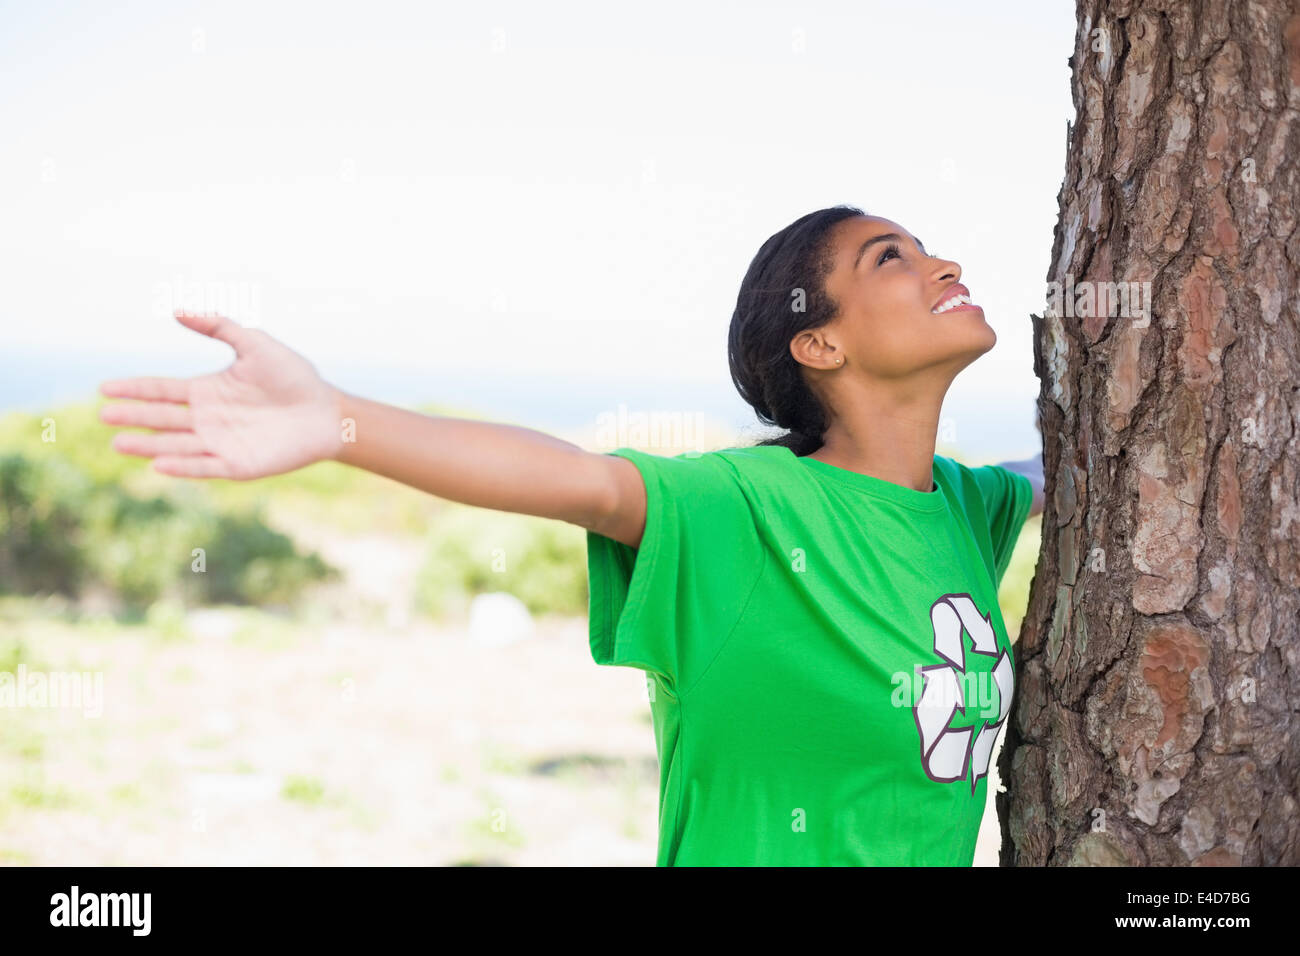 Bastante activista ambiental mirando hacia arriba en el árbol Foto de stock